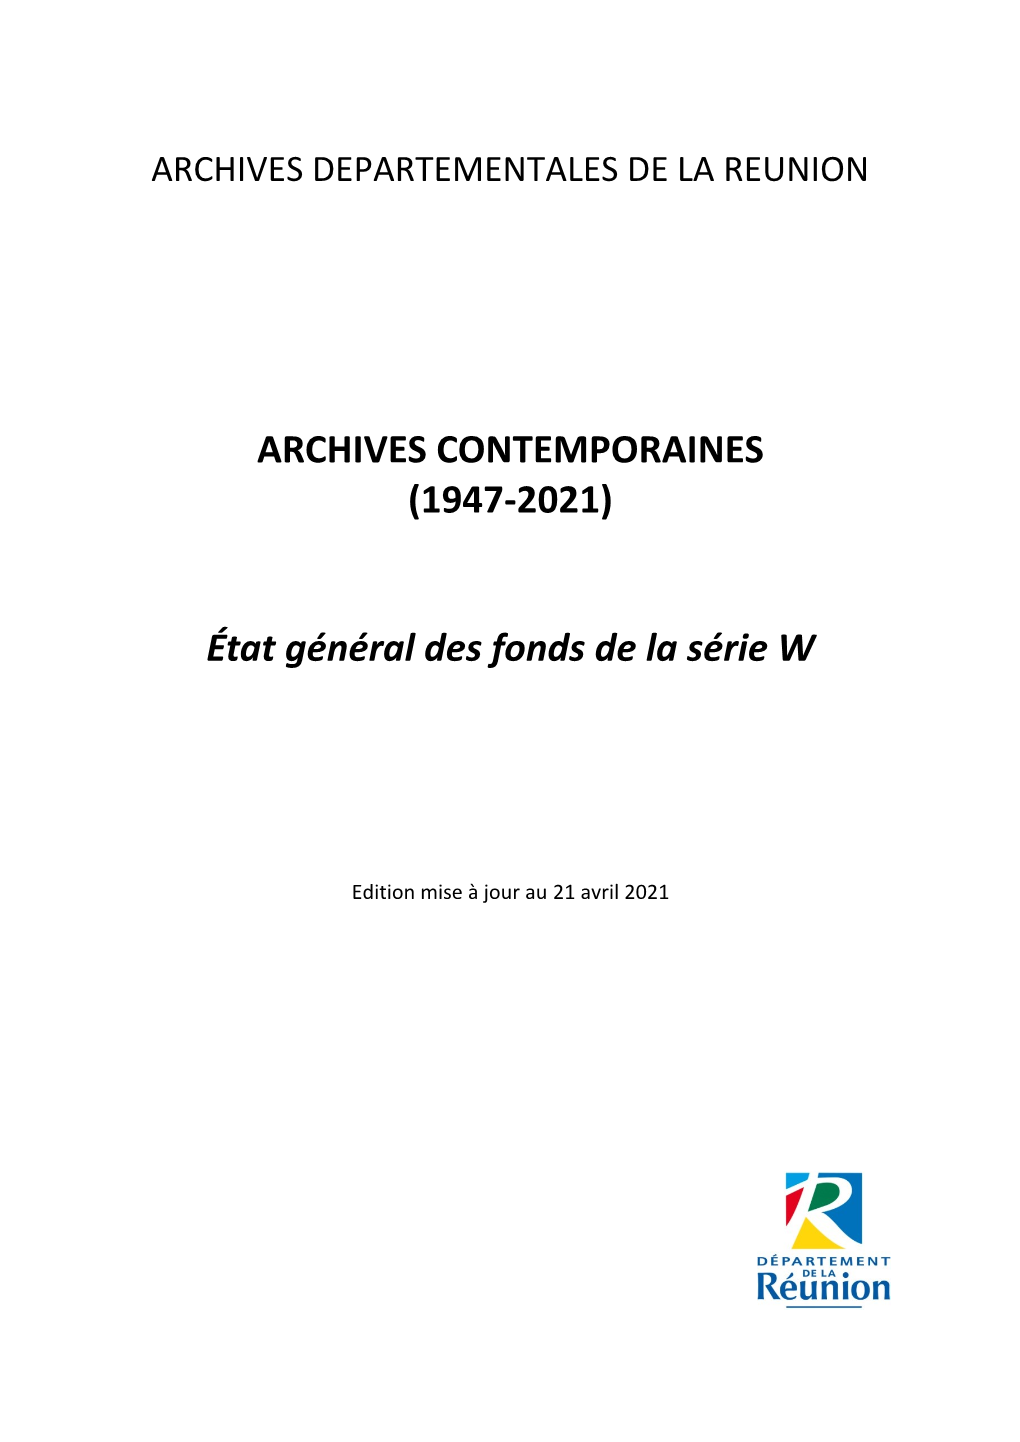 Archives Contemporaines (1947-2021)